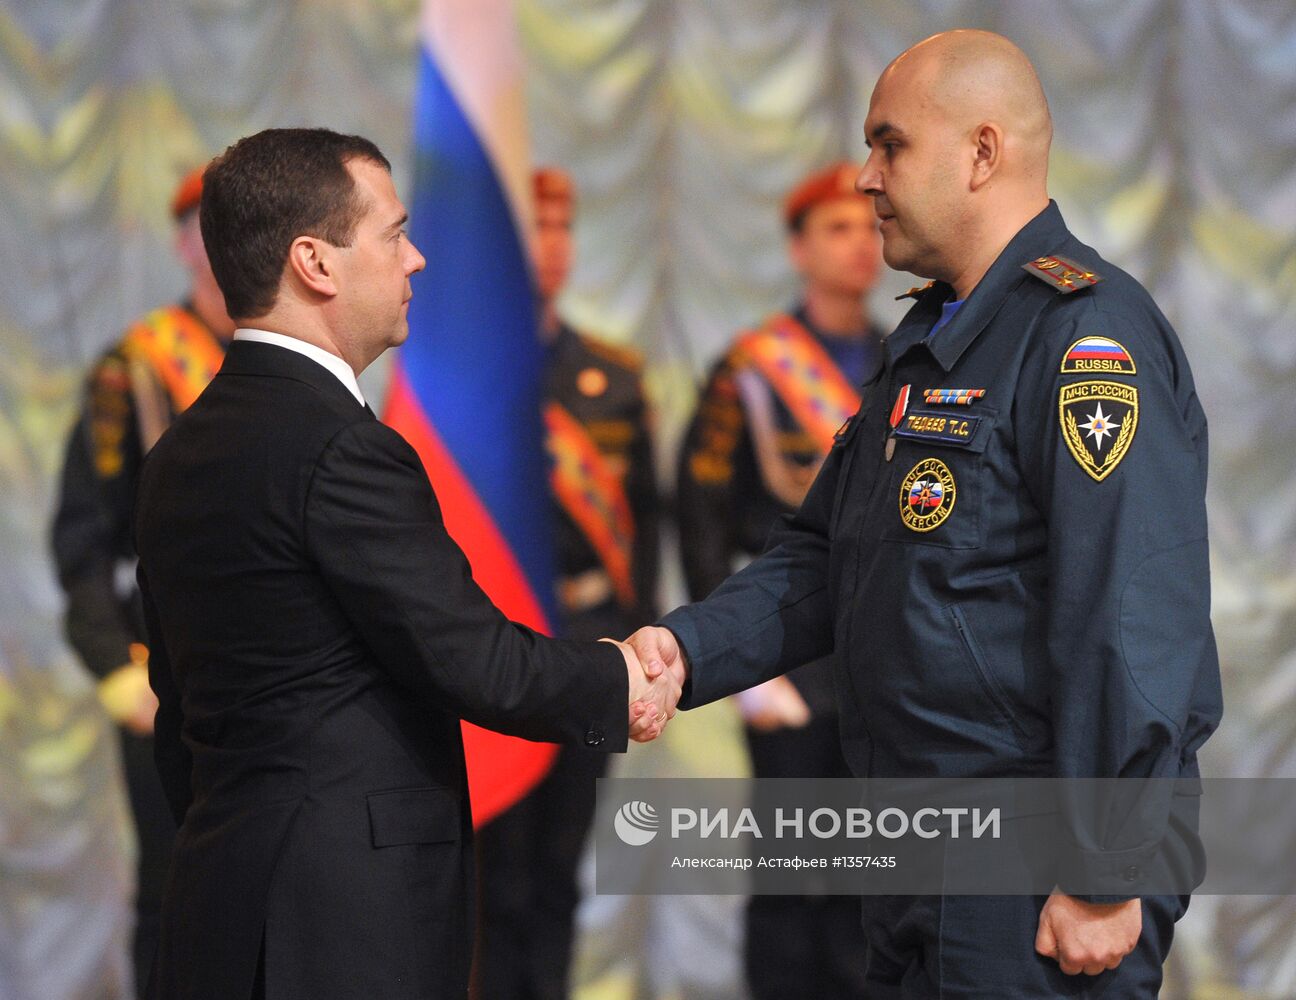 Д.Медведев на Всероссийском сборе руководящего состава МЧС